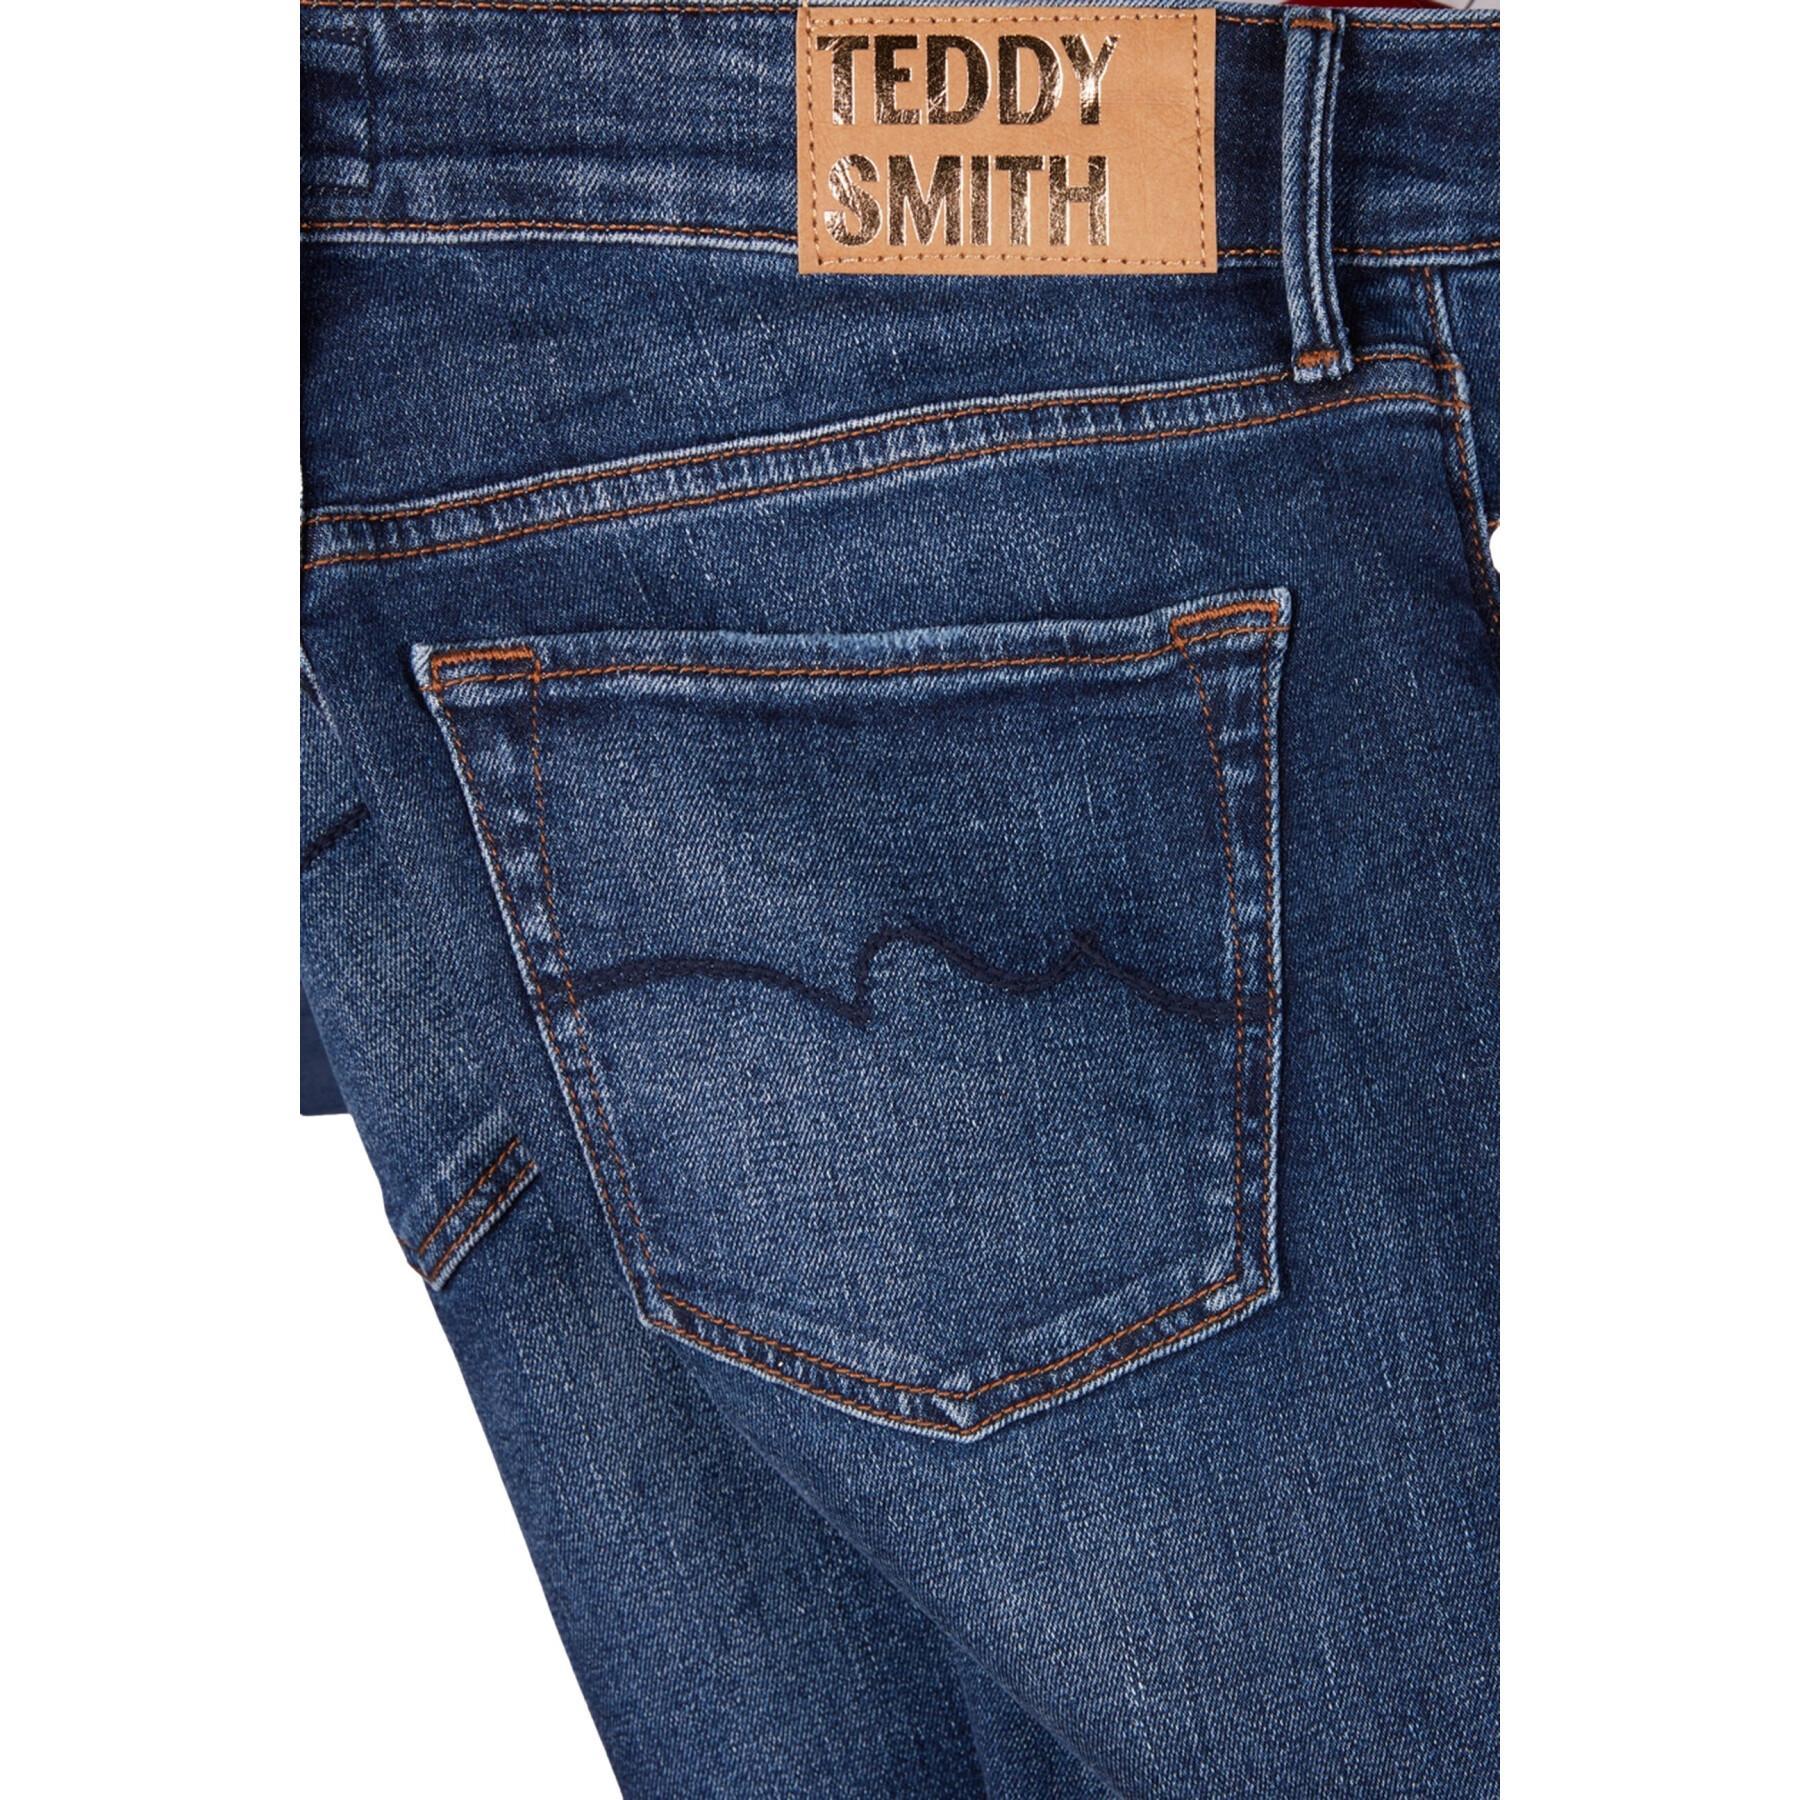 Pantalones vaqueros de mujer Teddy Smith Pepper